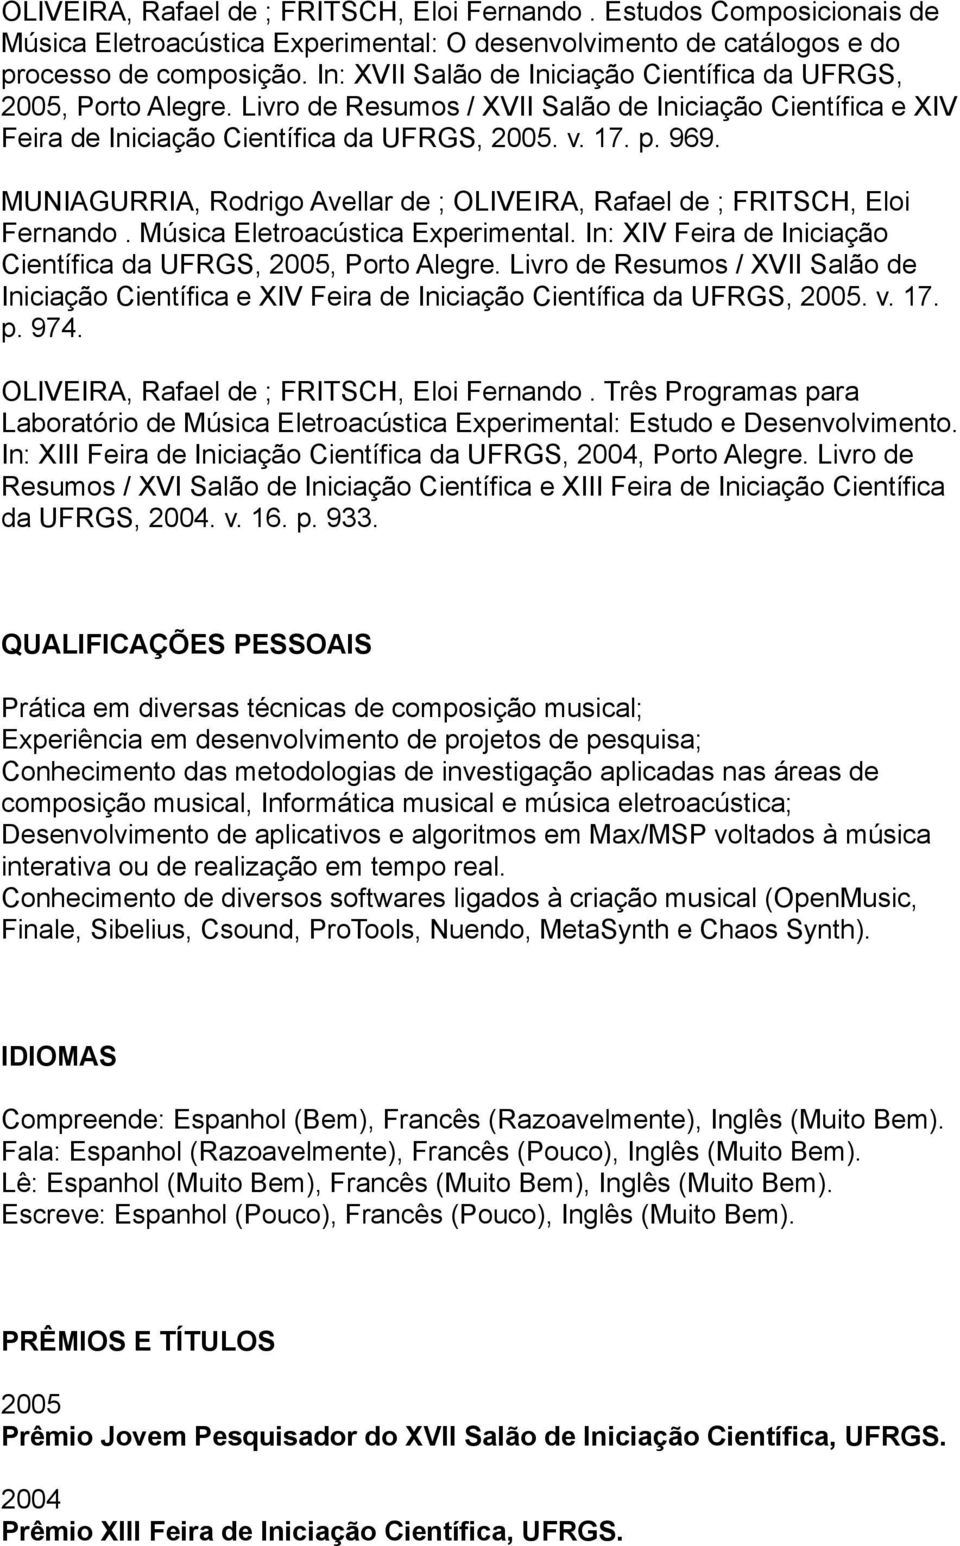 MUNIAGURRIA, Rodrigo Avellar de ; OLIVEIRA, Rafael de ; FRITSCH, Eloi Fernando. Música Eletroacústica Experimental. In: XIV Feira de Iniciação Científica da UFRGS, 2005, Porto Alegre.